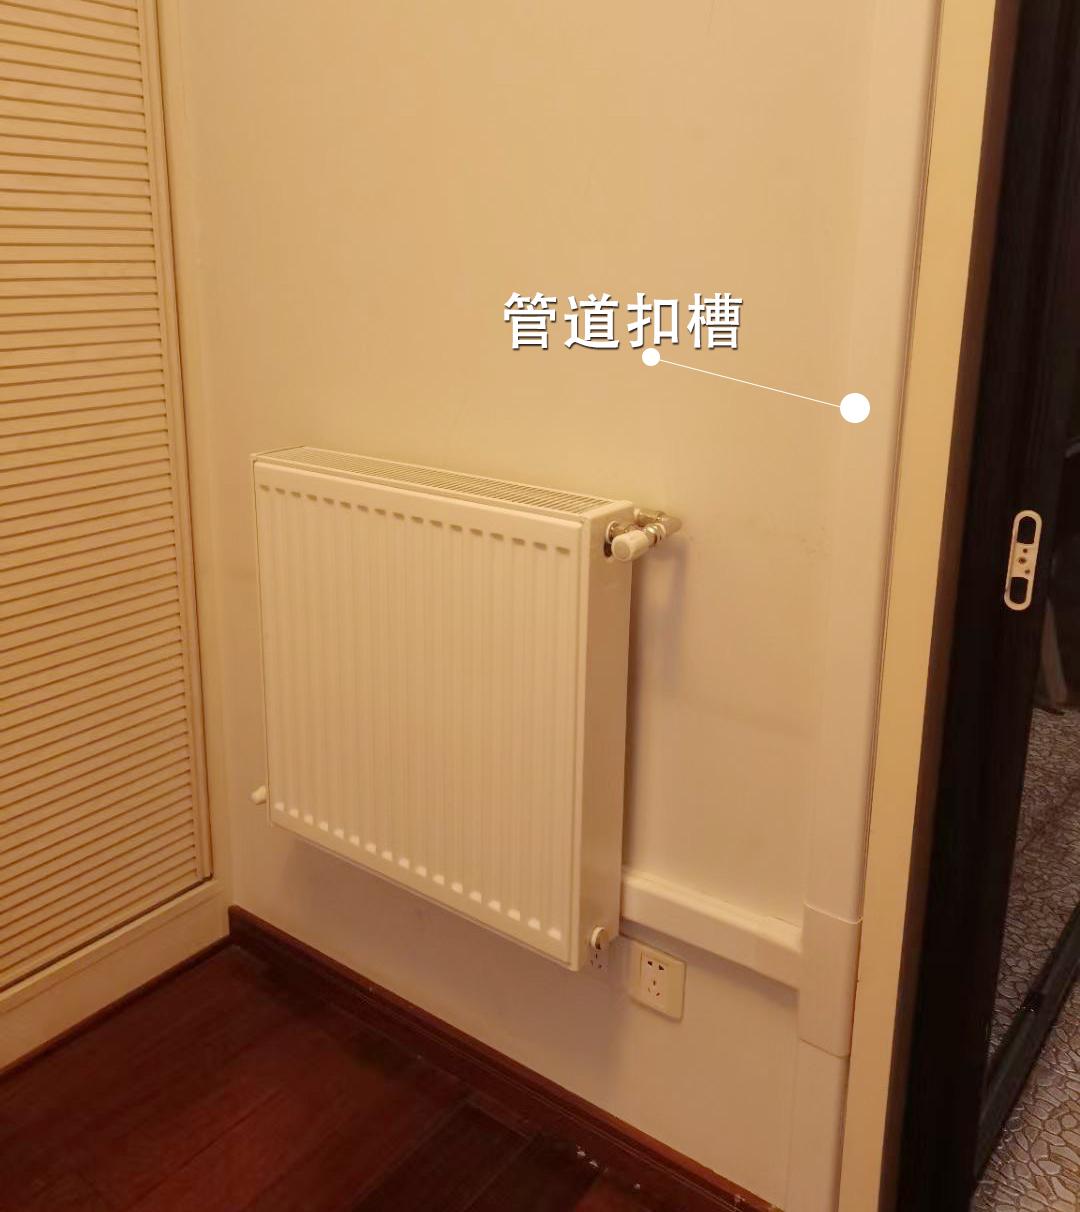 无突兀感且方便拆卸和安装卧室暖气片安装在角落位置利用暖气片制热时